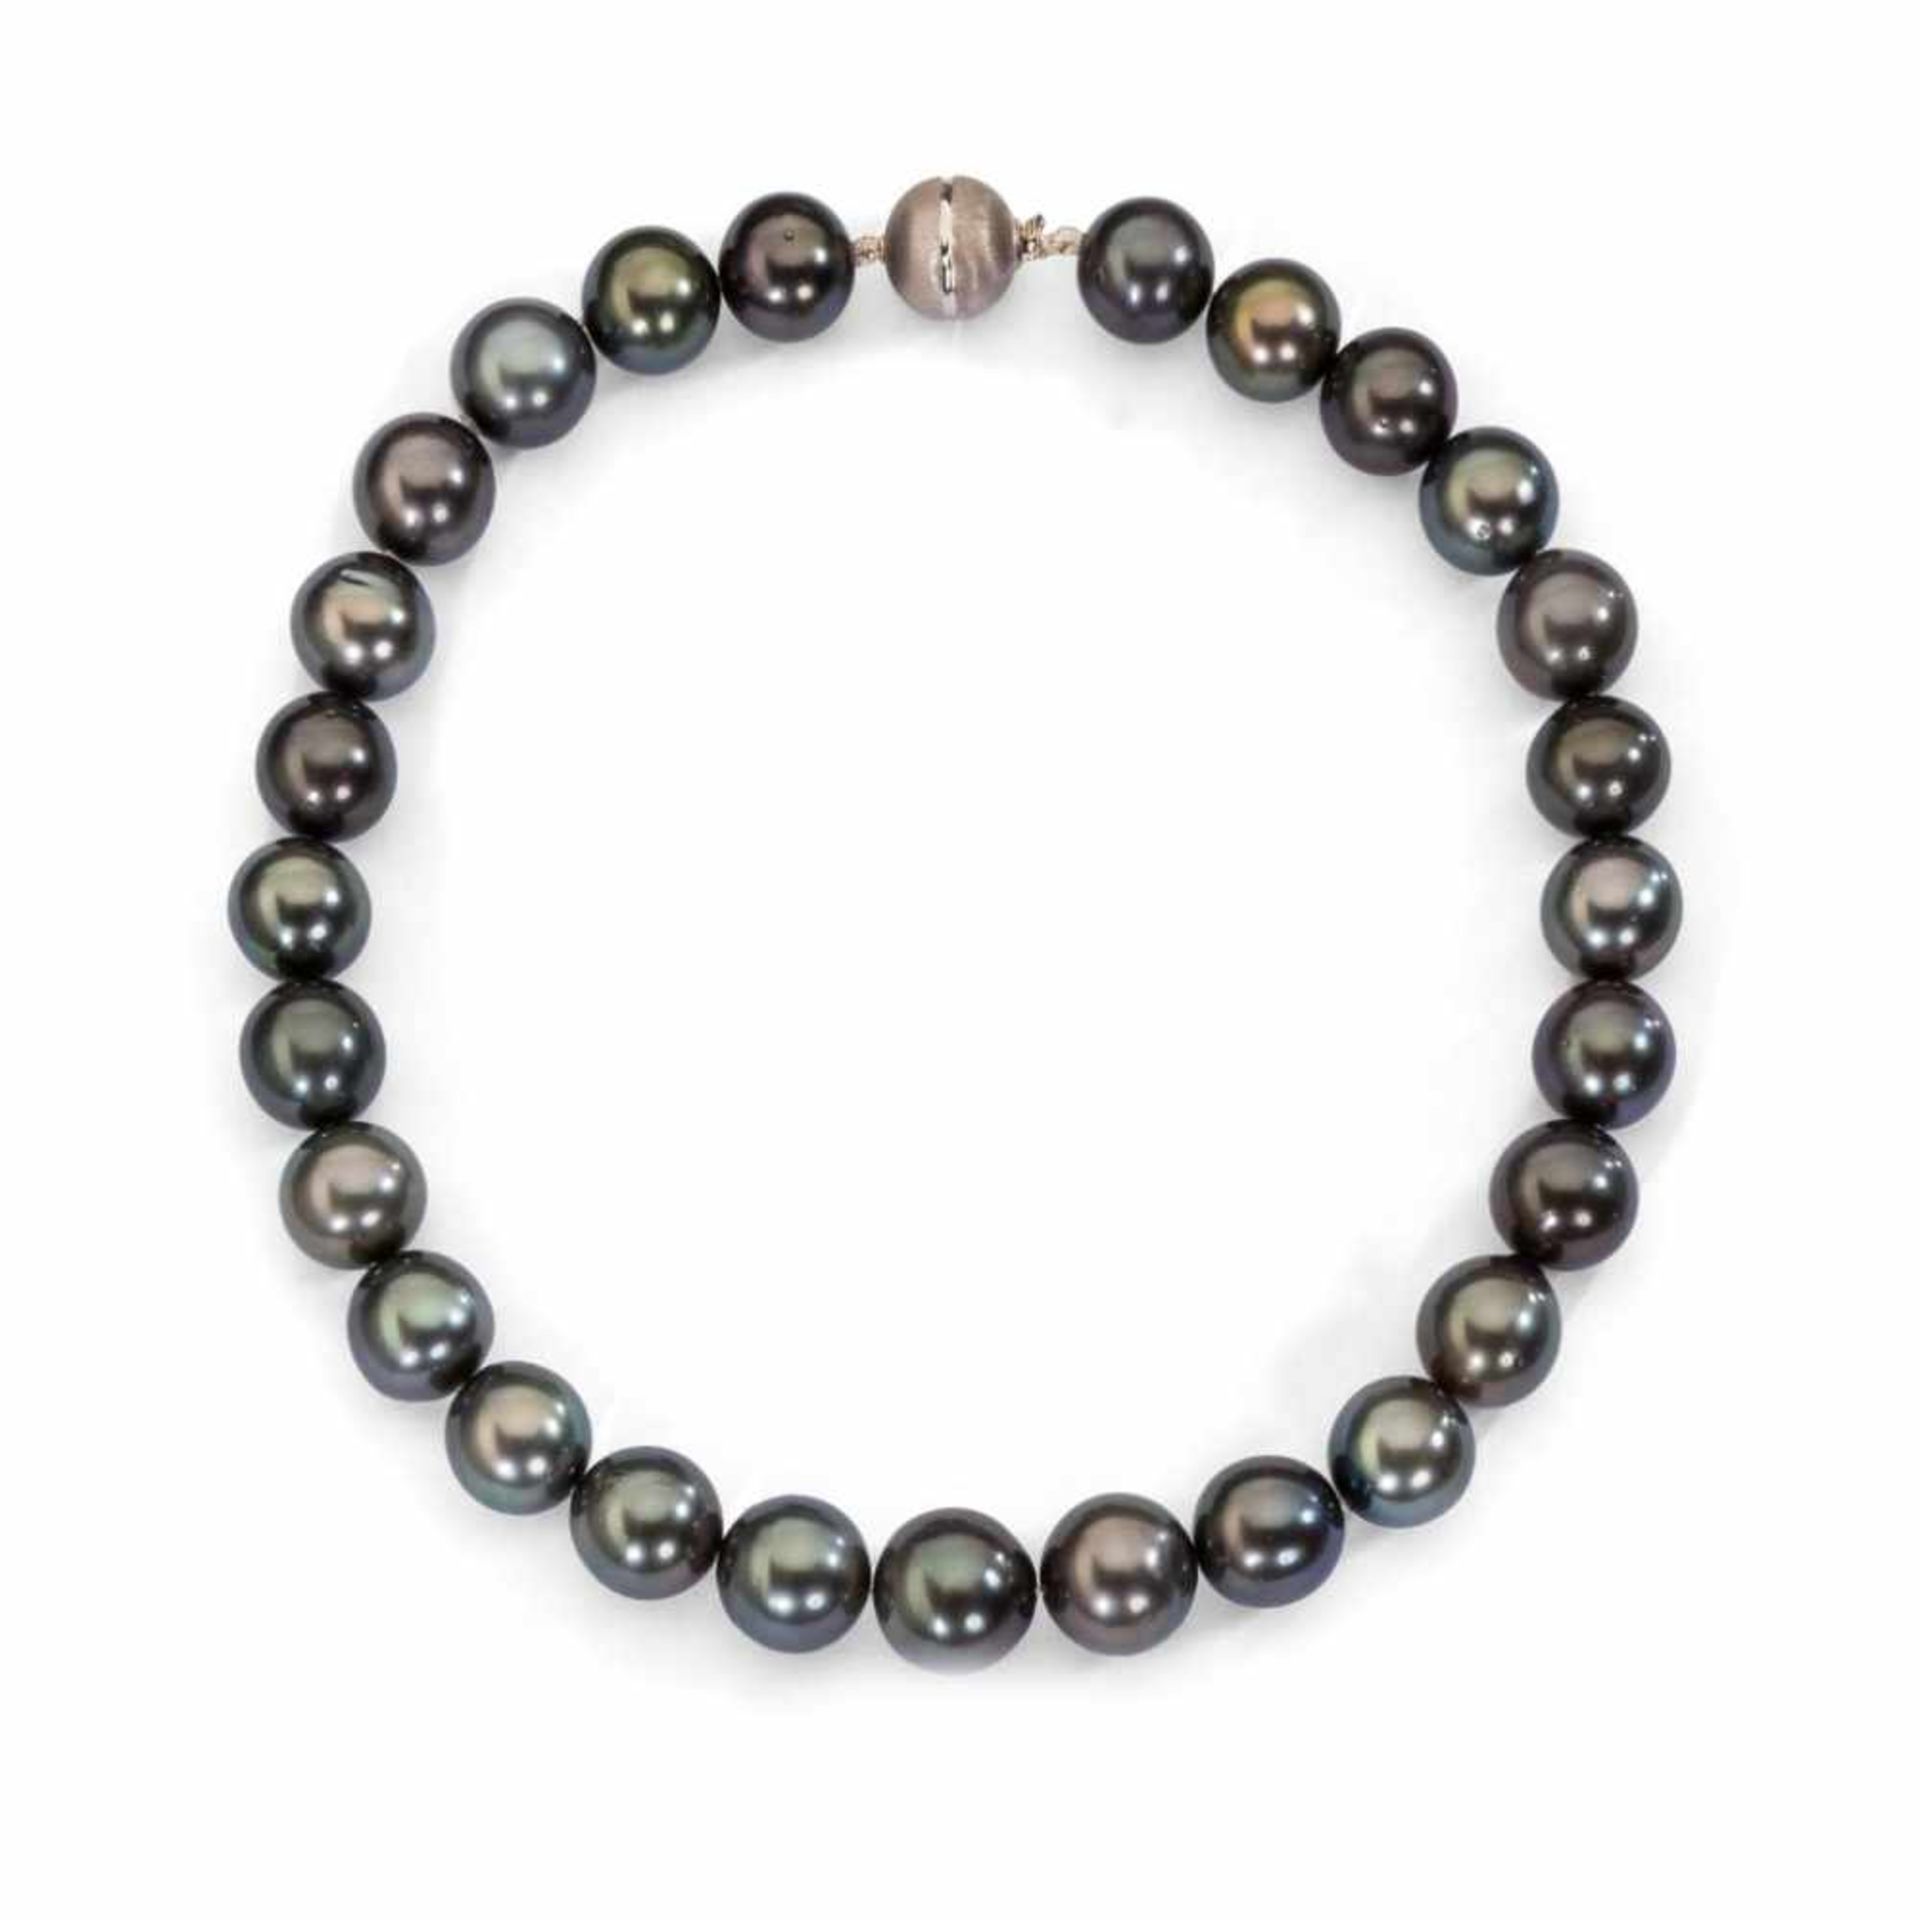 Feine graue Tahiti-Zuchtperlenkette. 27 Perlen in leichter Verlaufform, Ø 17 mm - 14,5 mm.